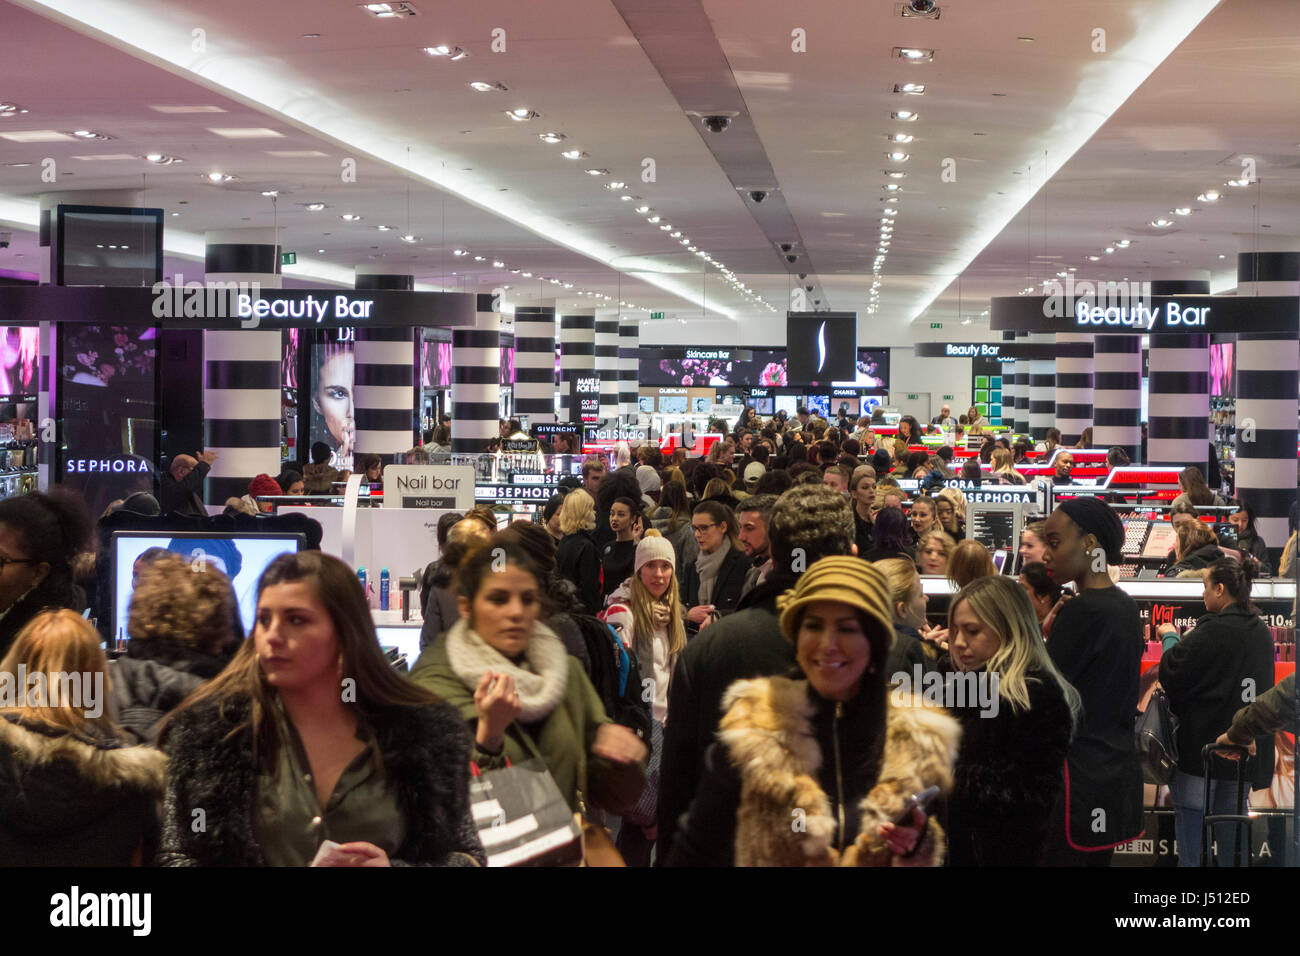 Comment Sephora a rénové son flagship sur les Champs-Elysées - Républik  Retail